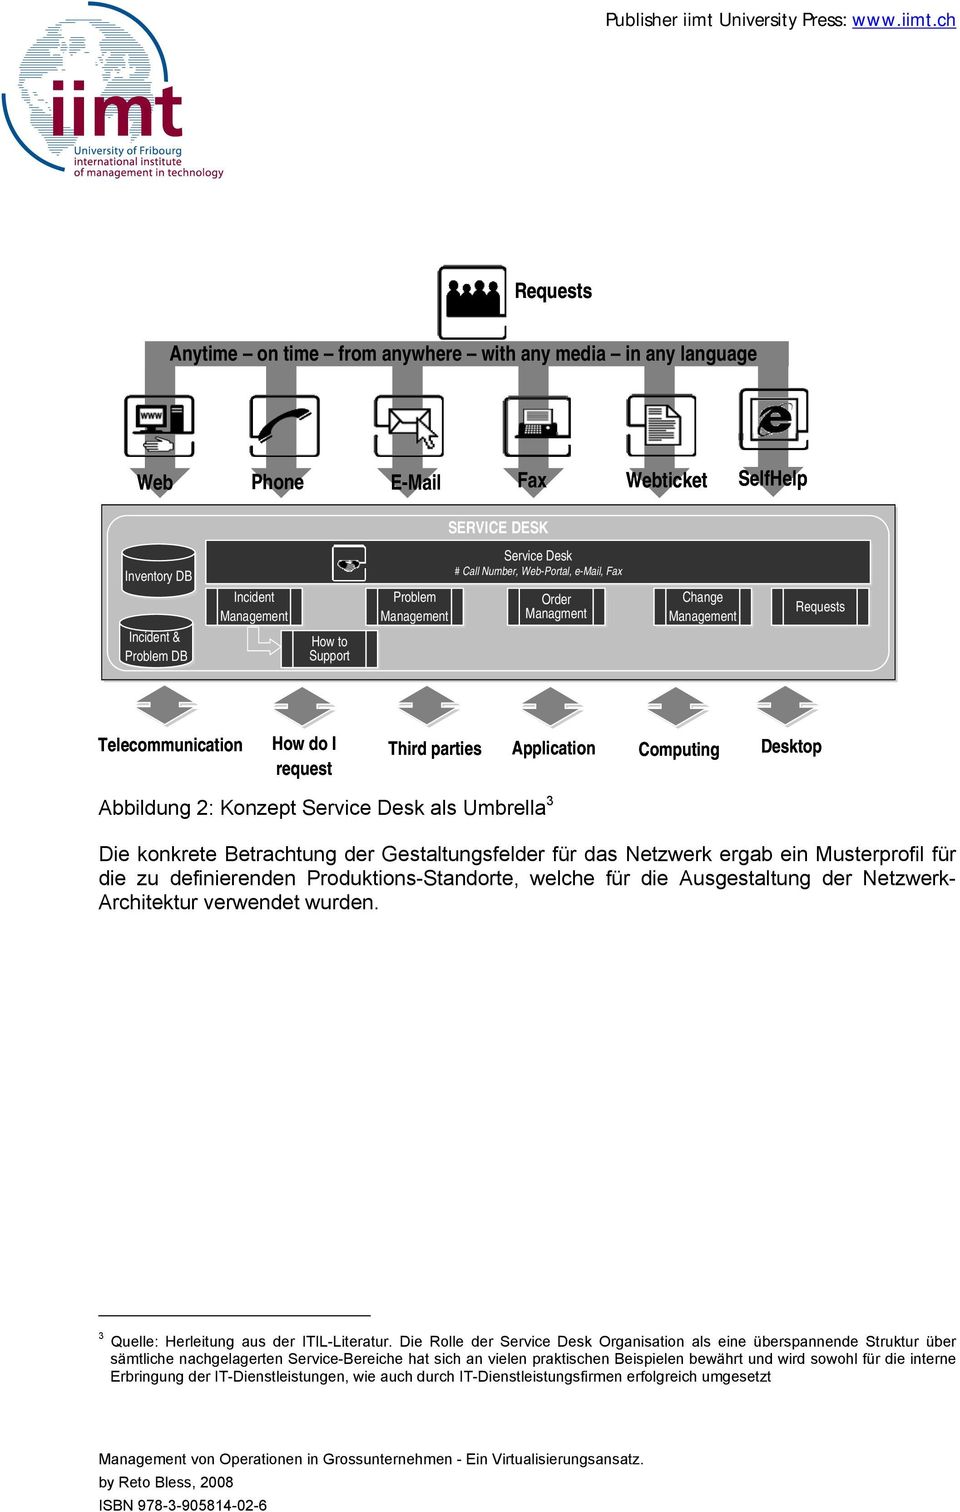 Abbildung 2: Konzept Service Desk als Umbrella 3 Die konkrete Betrachtung der Gestaltungsfelder für das Netzwerk ergab ein Musterprofil für die zu definierenden Produktions-Standorte, welche für die